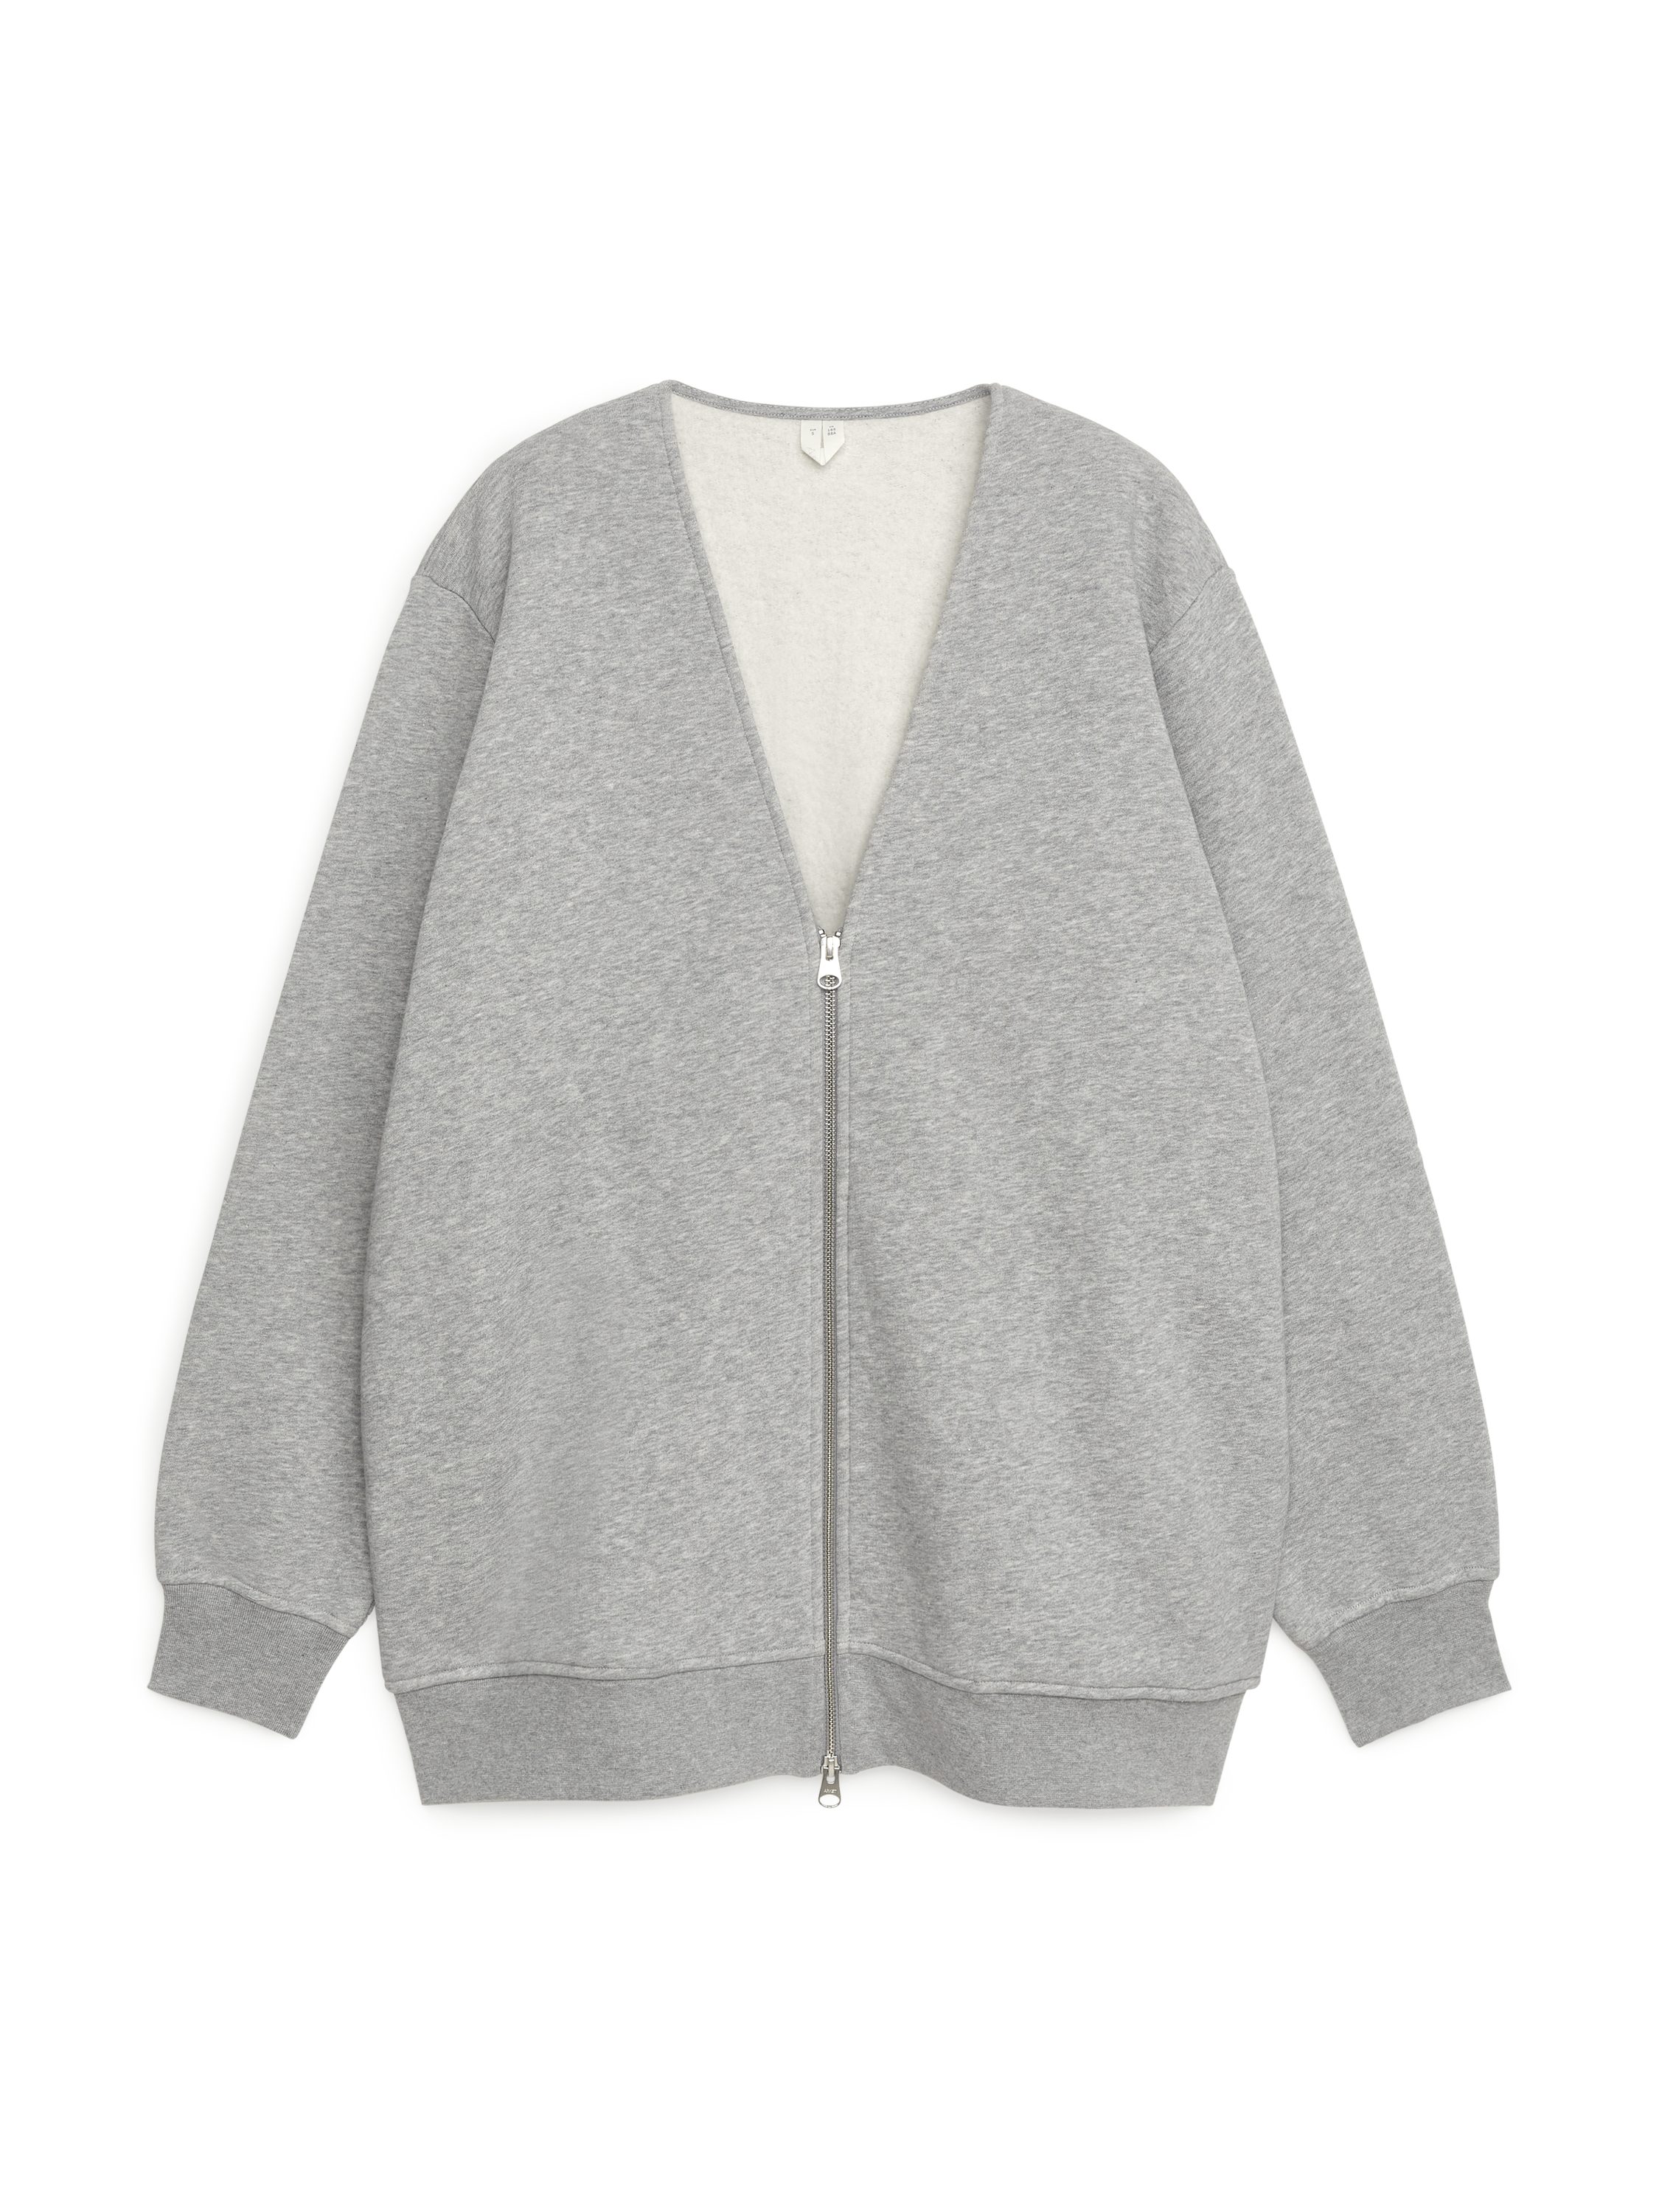 Sweatshirt Zip Cardigan Grey Melange Grey - 345 SEK | Afound.com